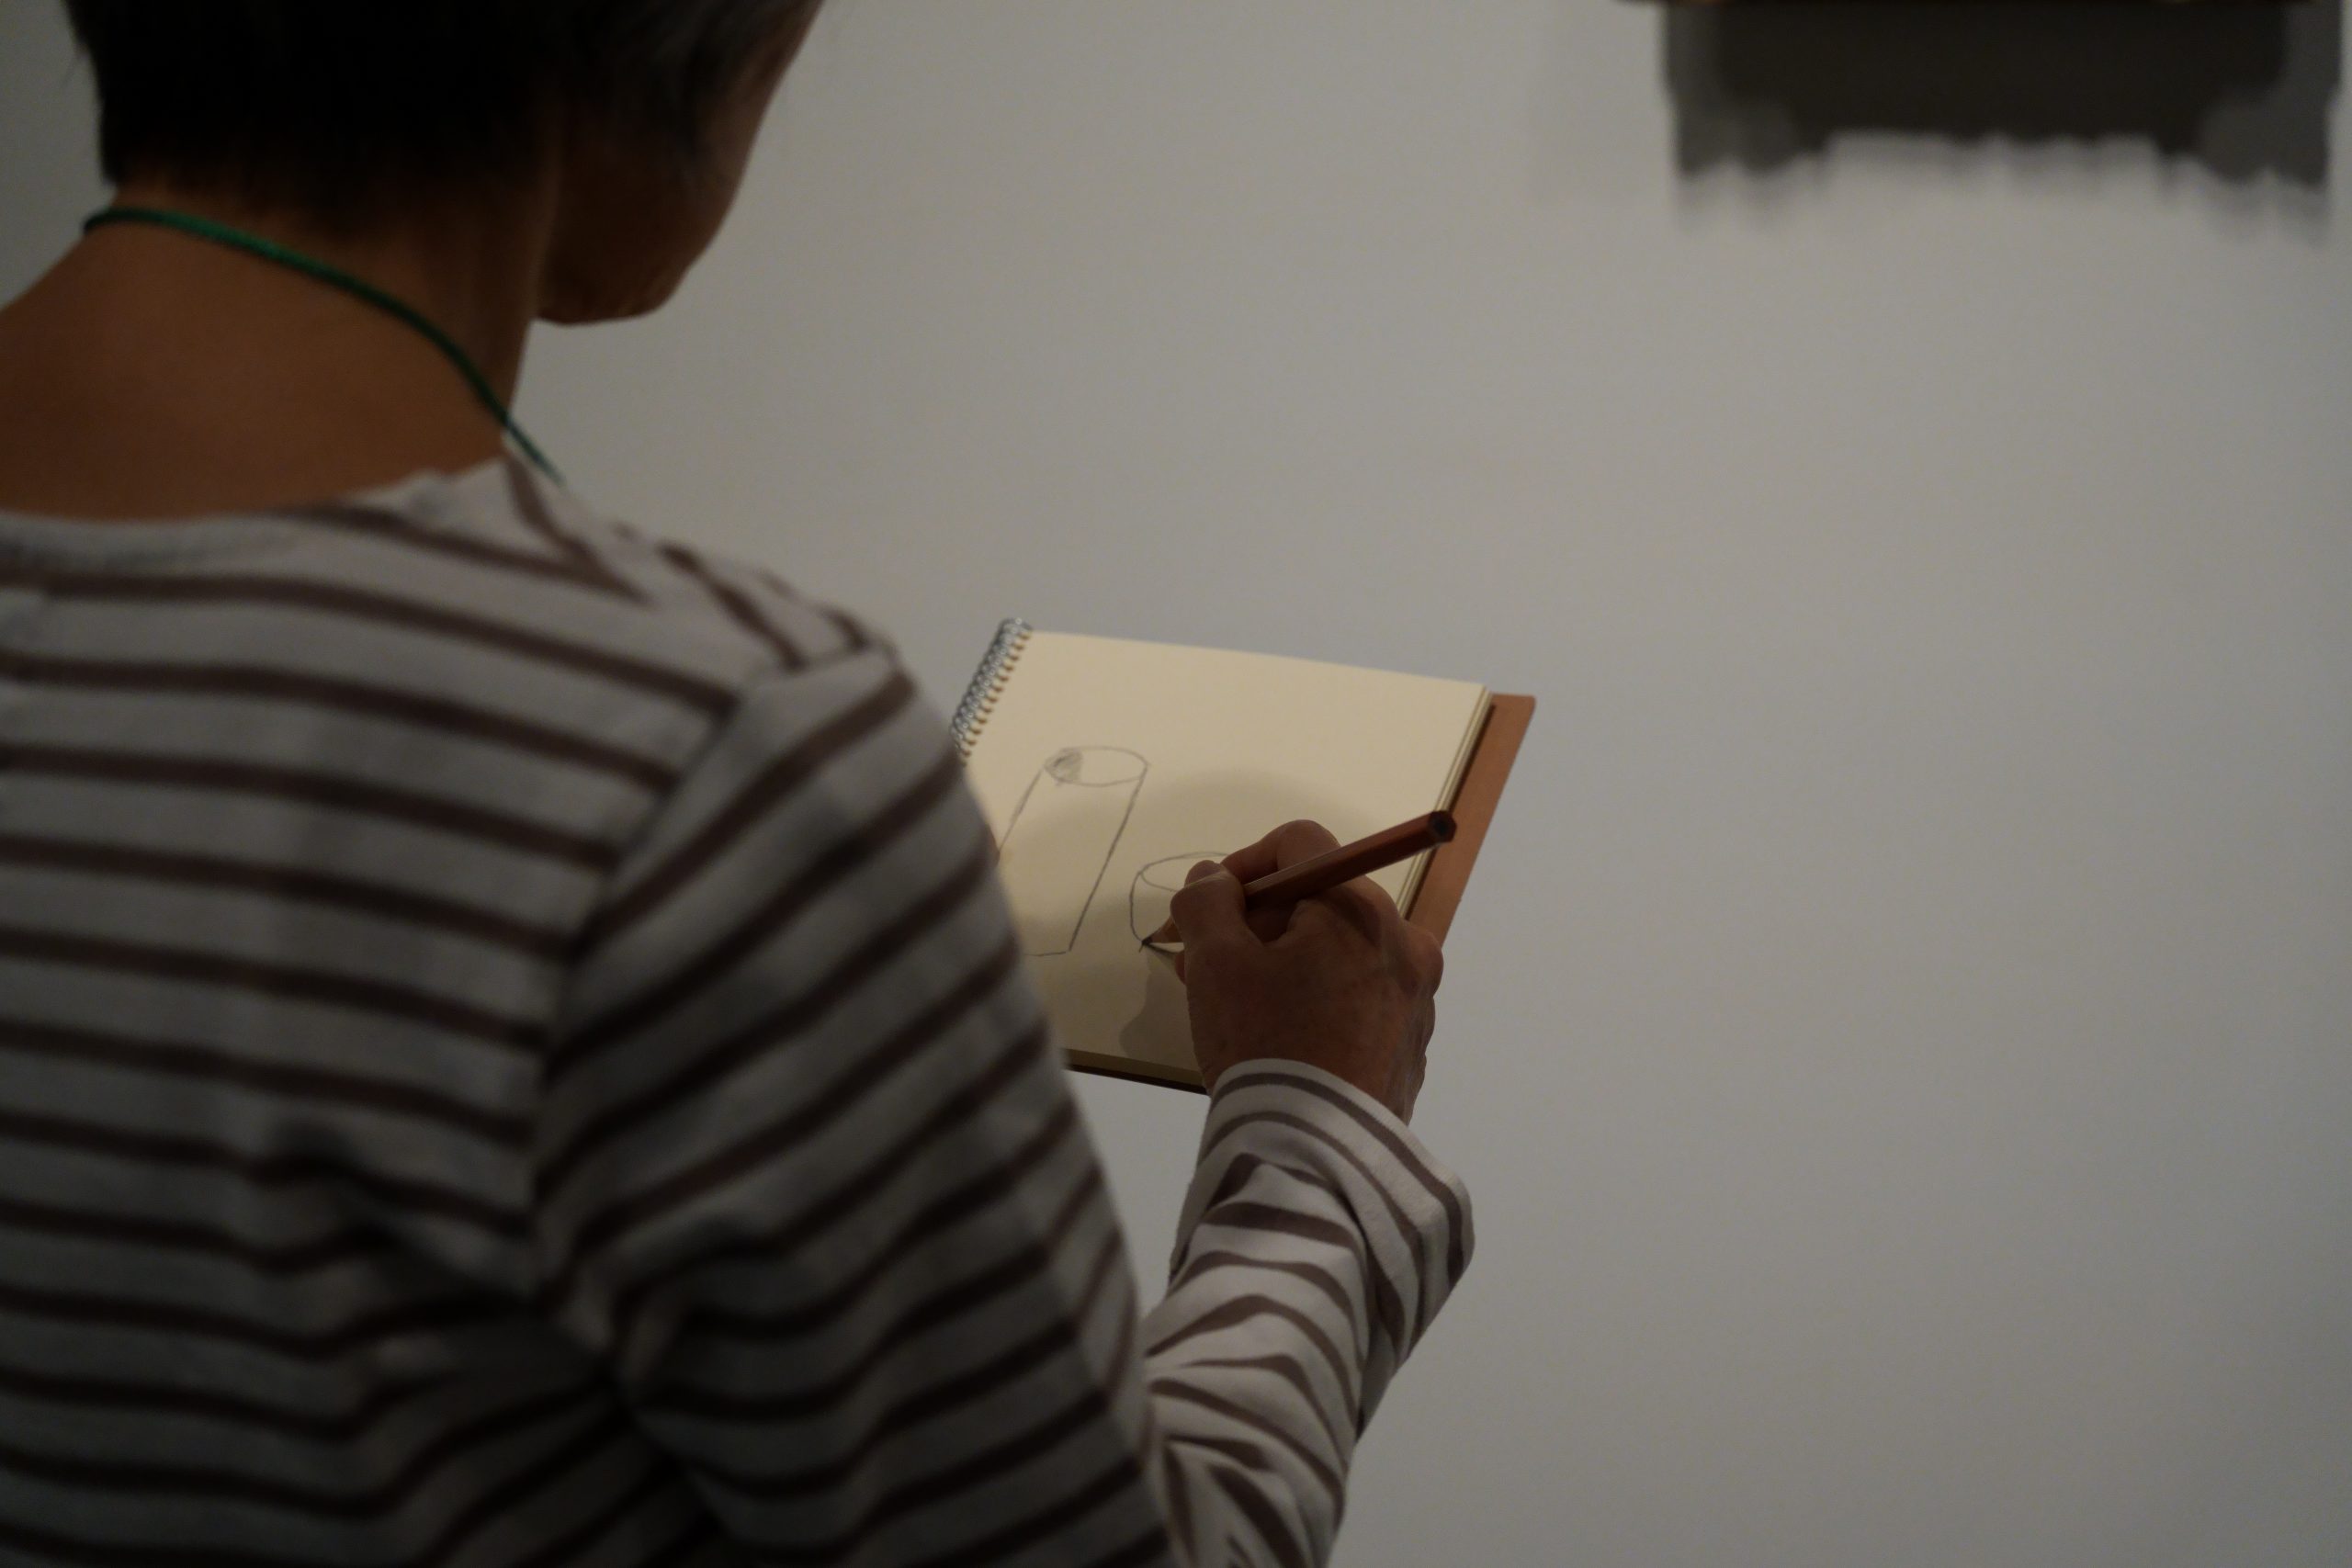 ユニバーサル・ミュージアム プログラムVol.1 手話と声とスケッチのある鑑賞会「描くことは見ること」